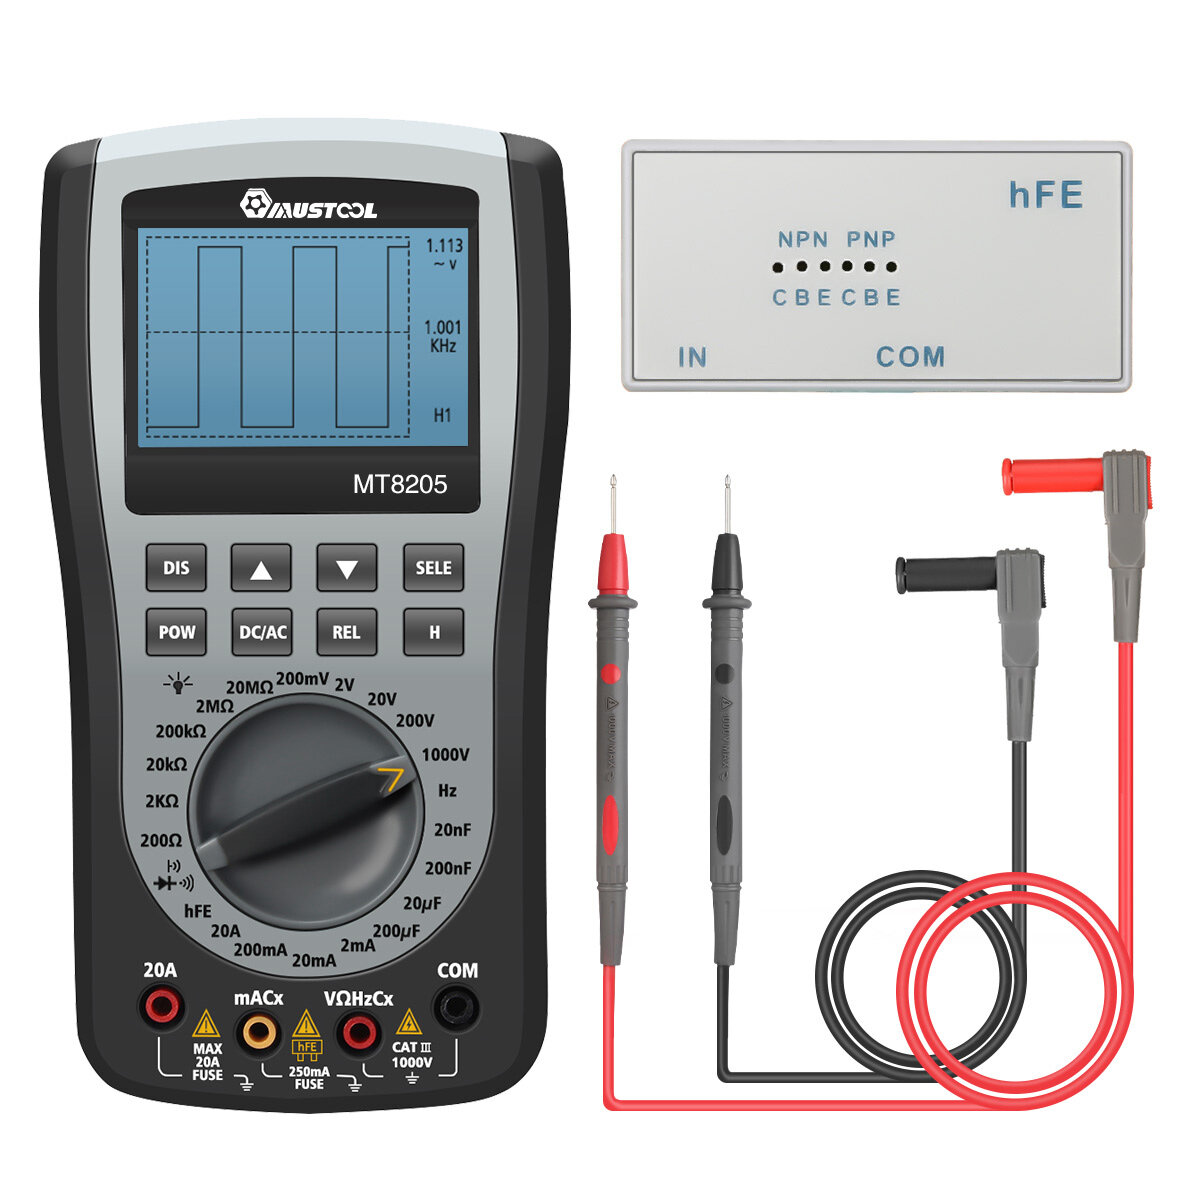 Strumento di misurazione del controllore di capacità della batteria del tester digitale della batteria 90 x 60mm per batteria a bottone della batteria 